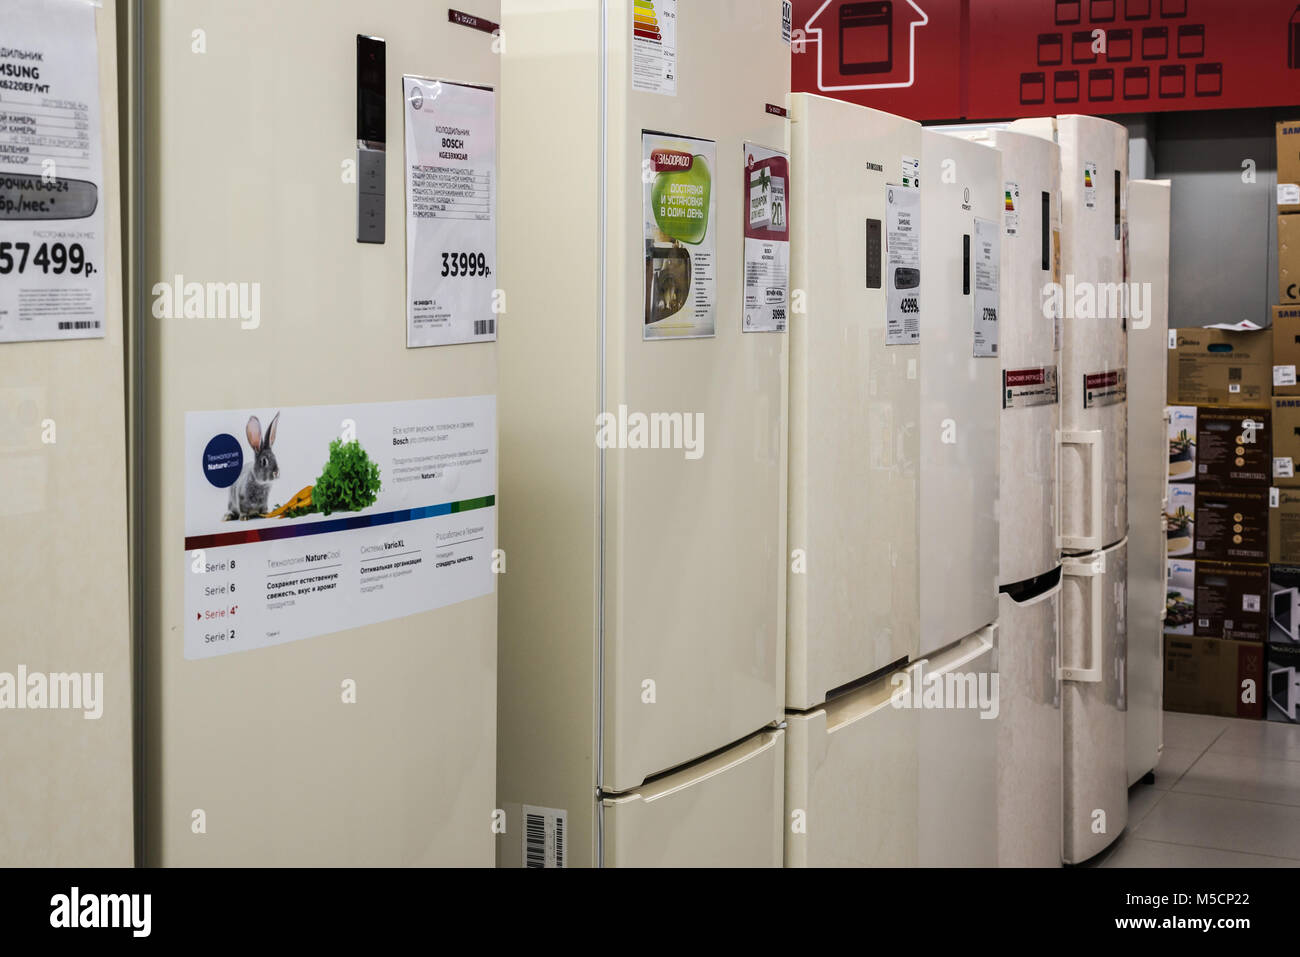 Mosca, Russia - 20 febbraio 2018. frigoriferi nel negozio di elettronica Eldorado Foto Stock